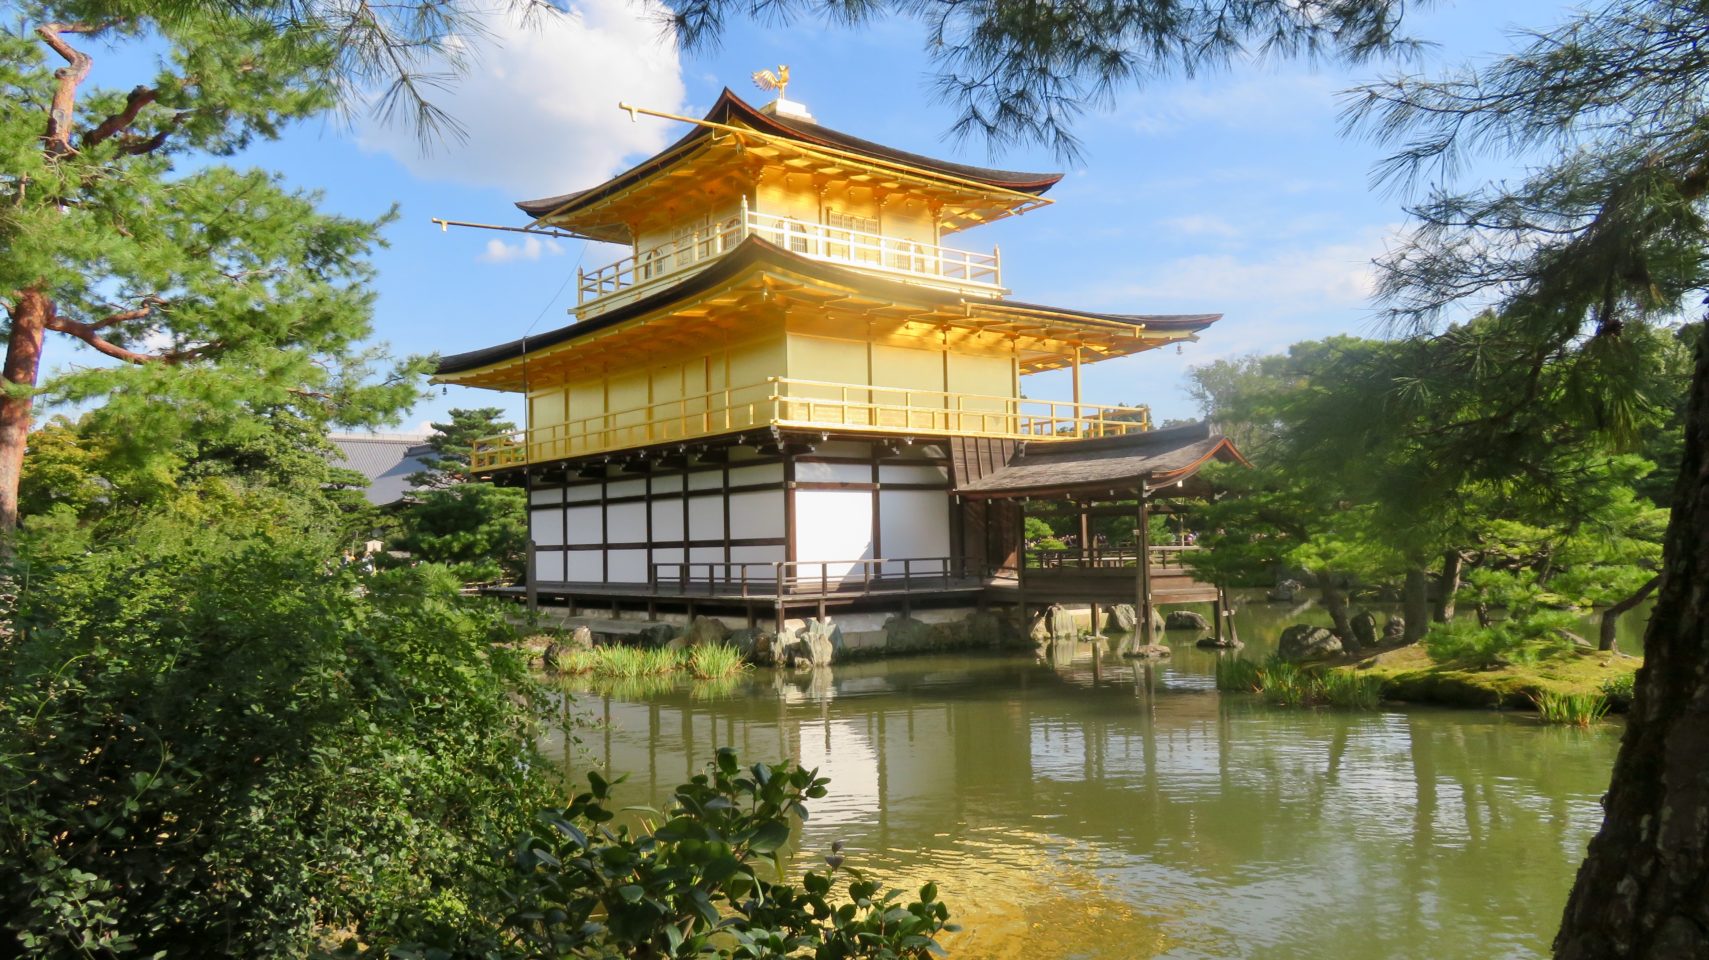 Japan Travel ~ The Golden Pavilion in Kyoto Japan